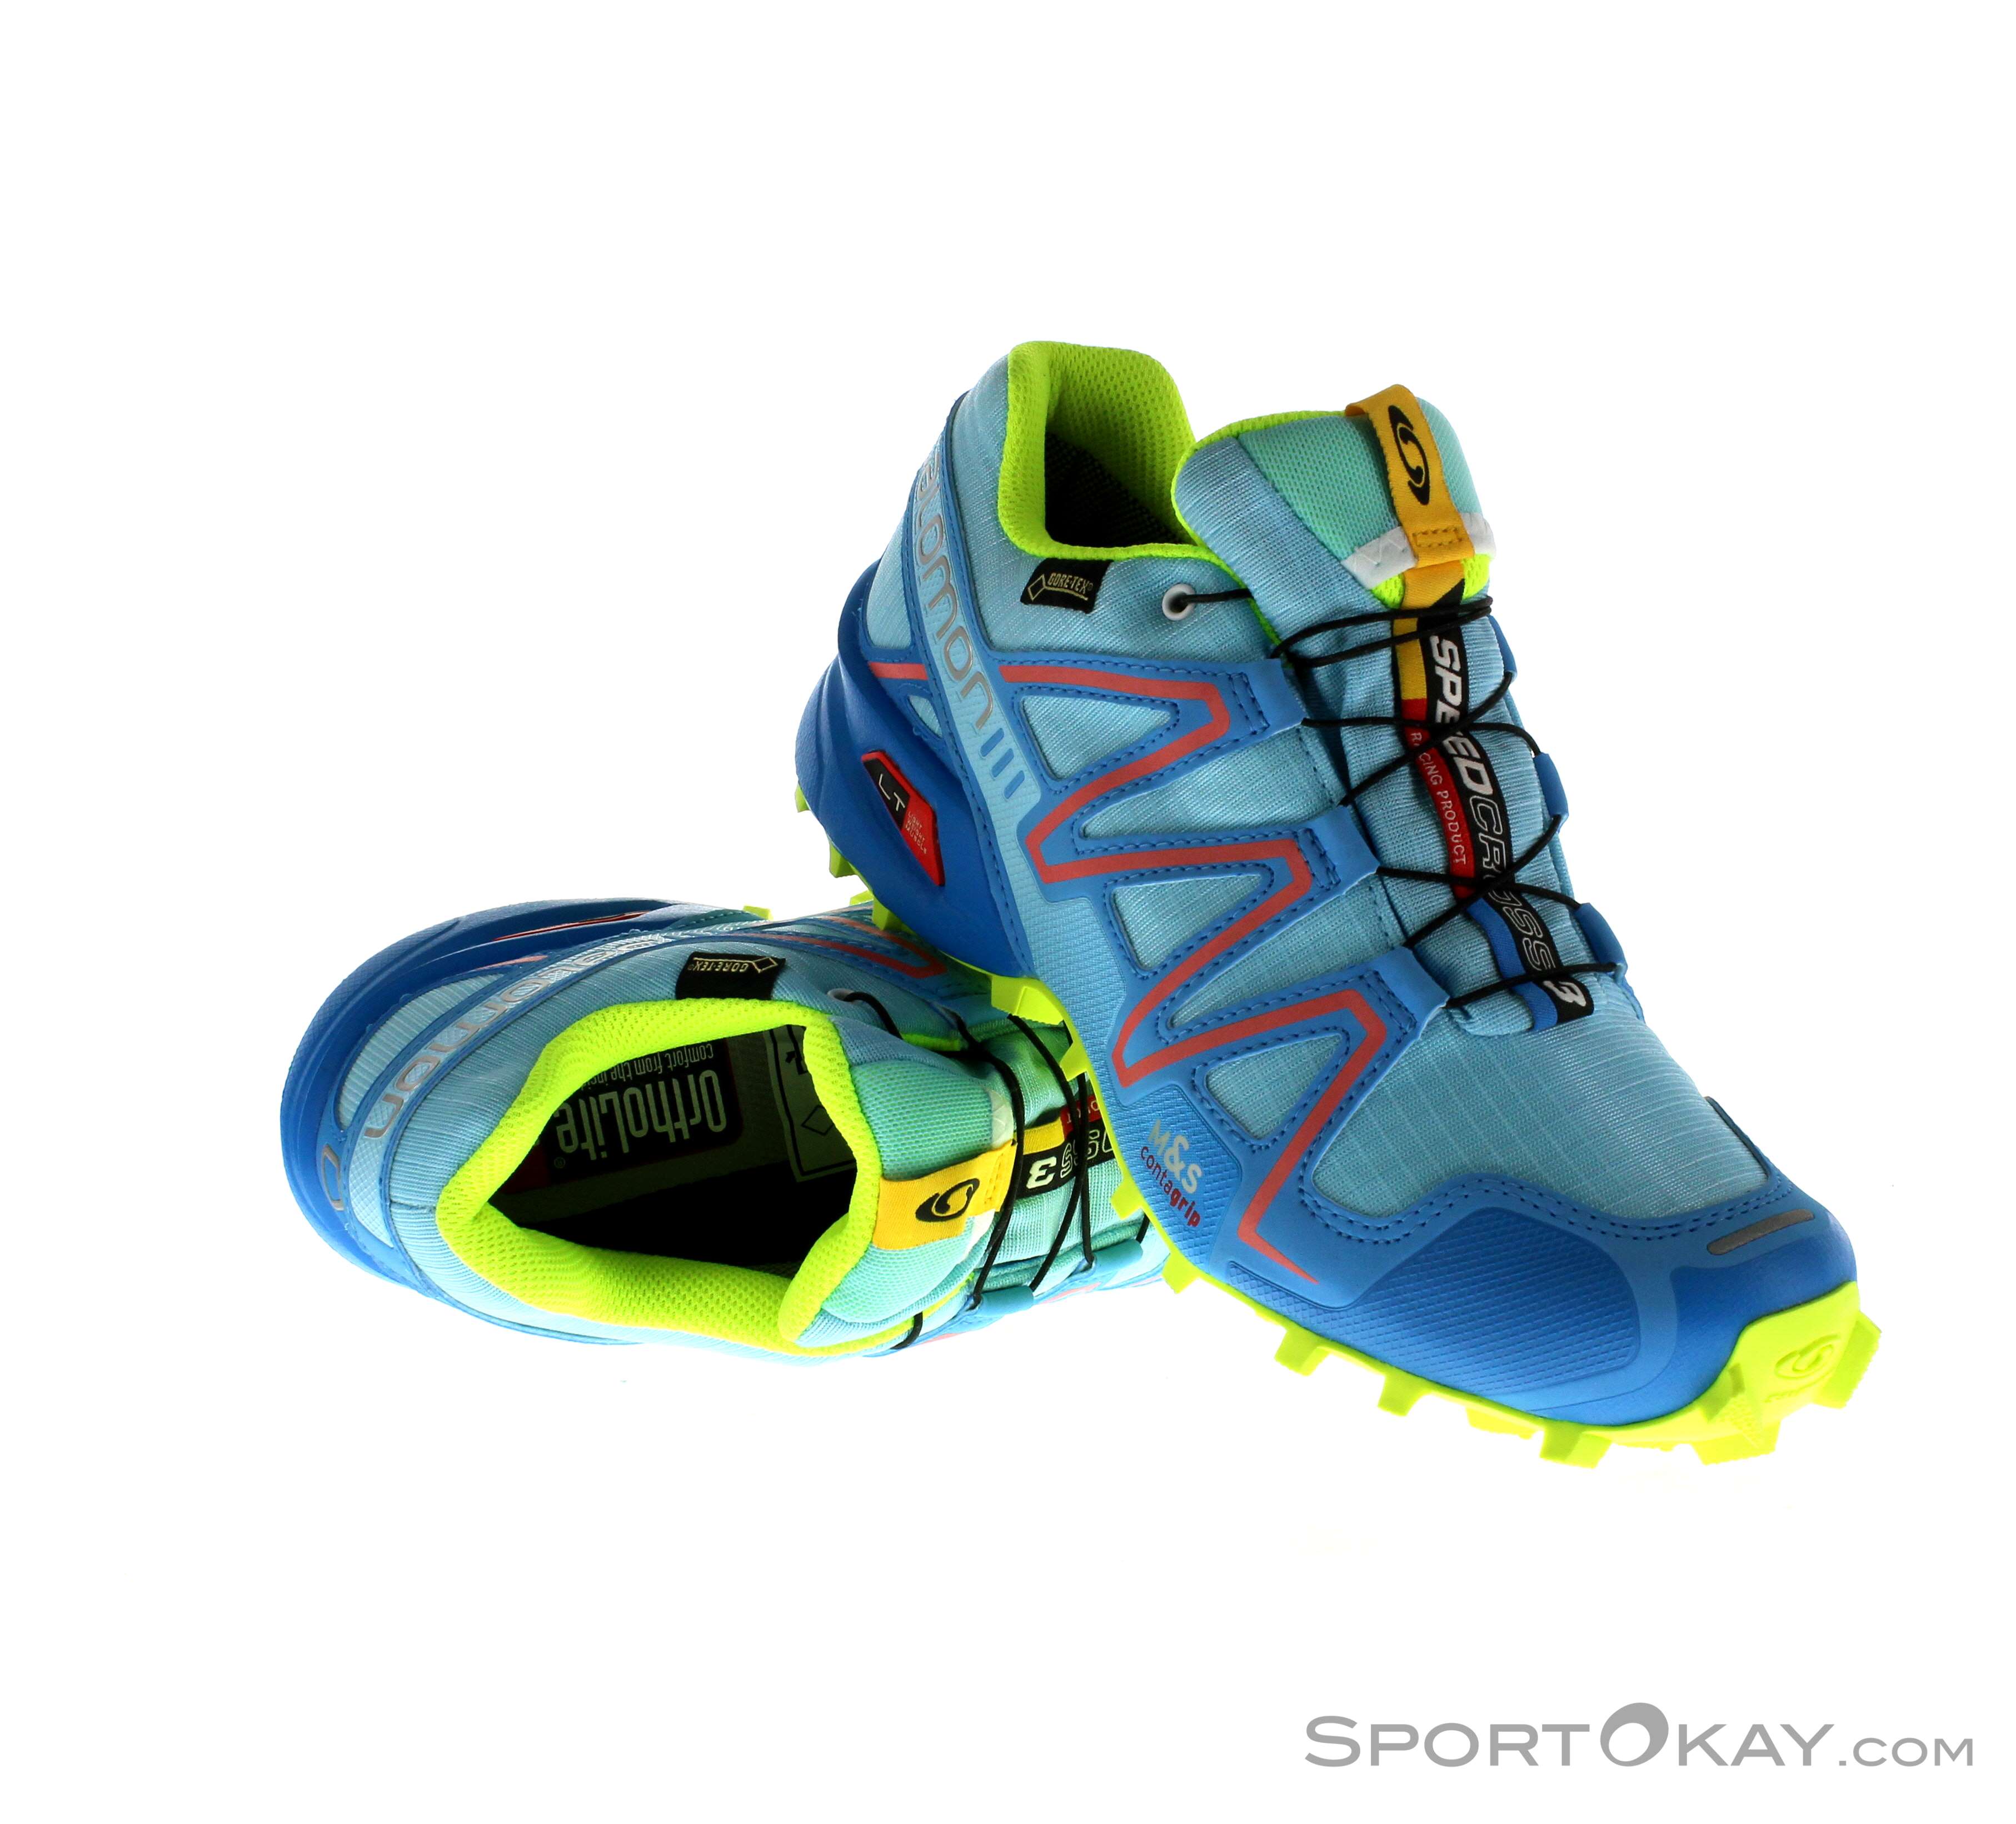 Salomon Speedcross 3 GTX Damen Traillaufschuhe Gore-Tex Trail Running - Running Shoes - Running - All